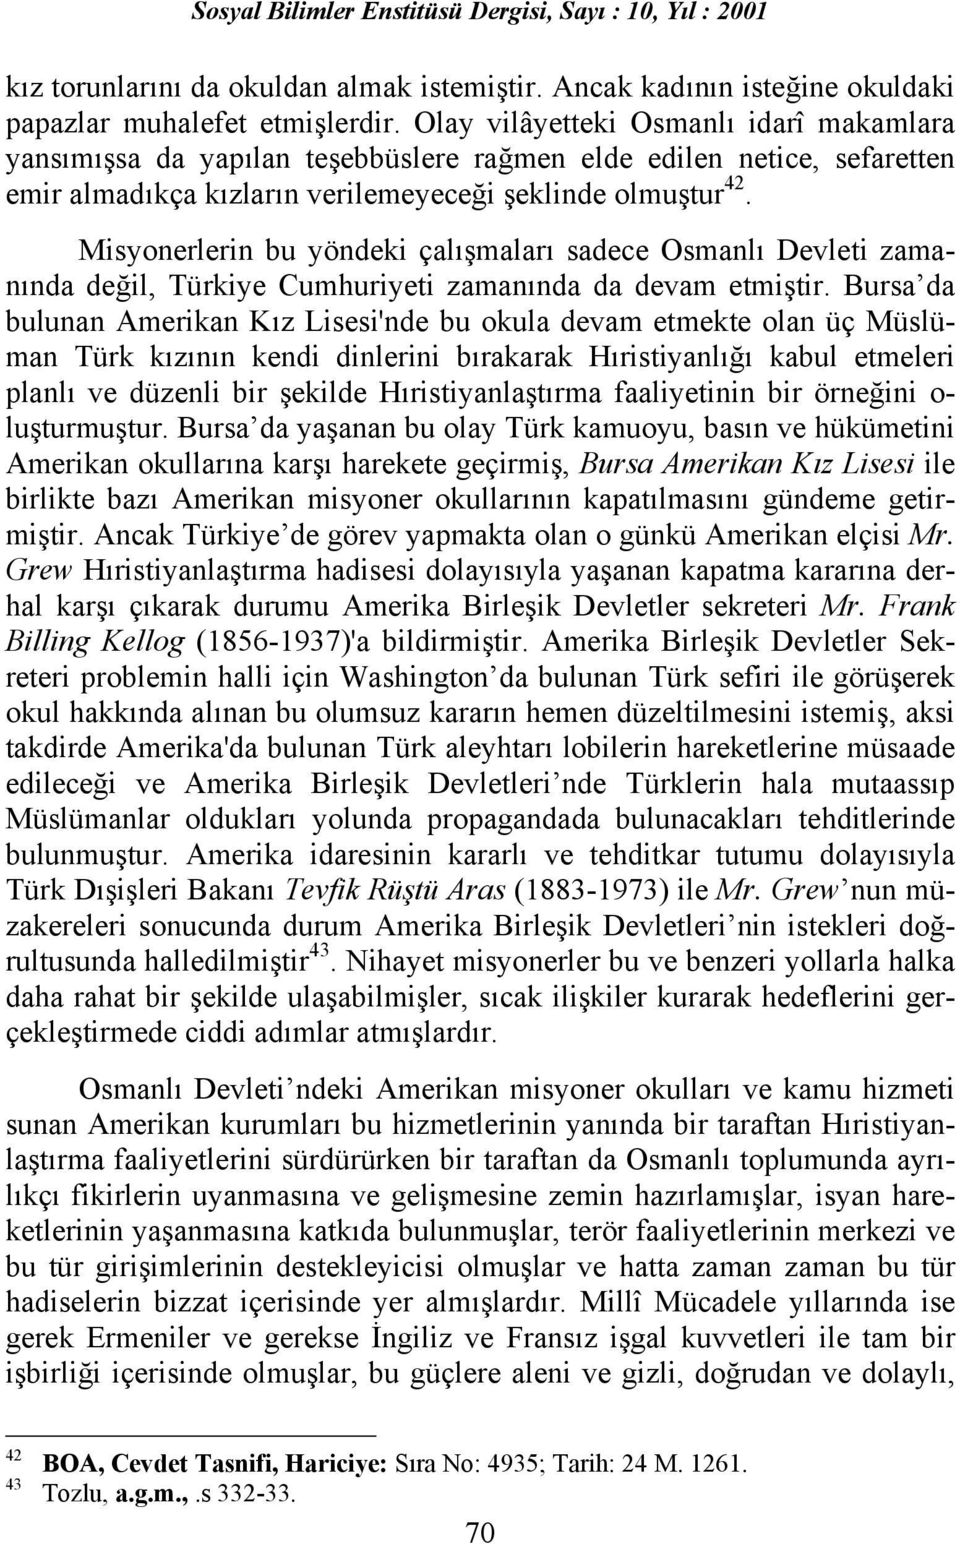 Misyonerlerin bu yöndeki çalõşmalarõ sadece Osmanlõ Devleti zamanõnda değil, Türkiye Cumhuriyeti zamanõnda da devam etmiştir.